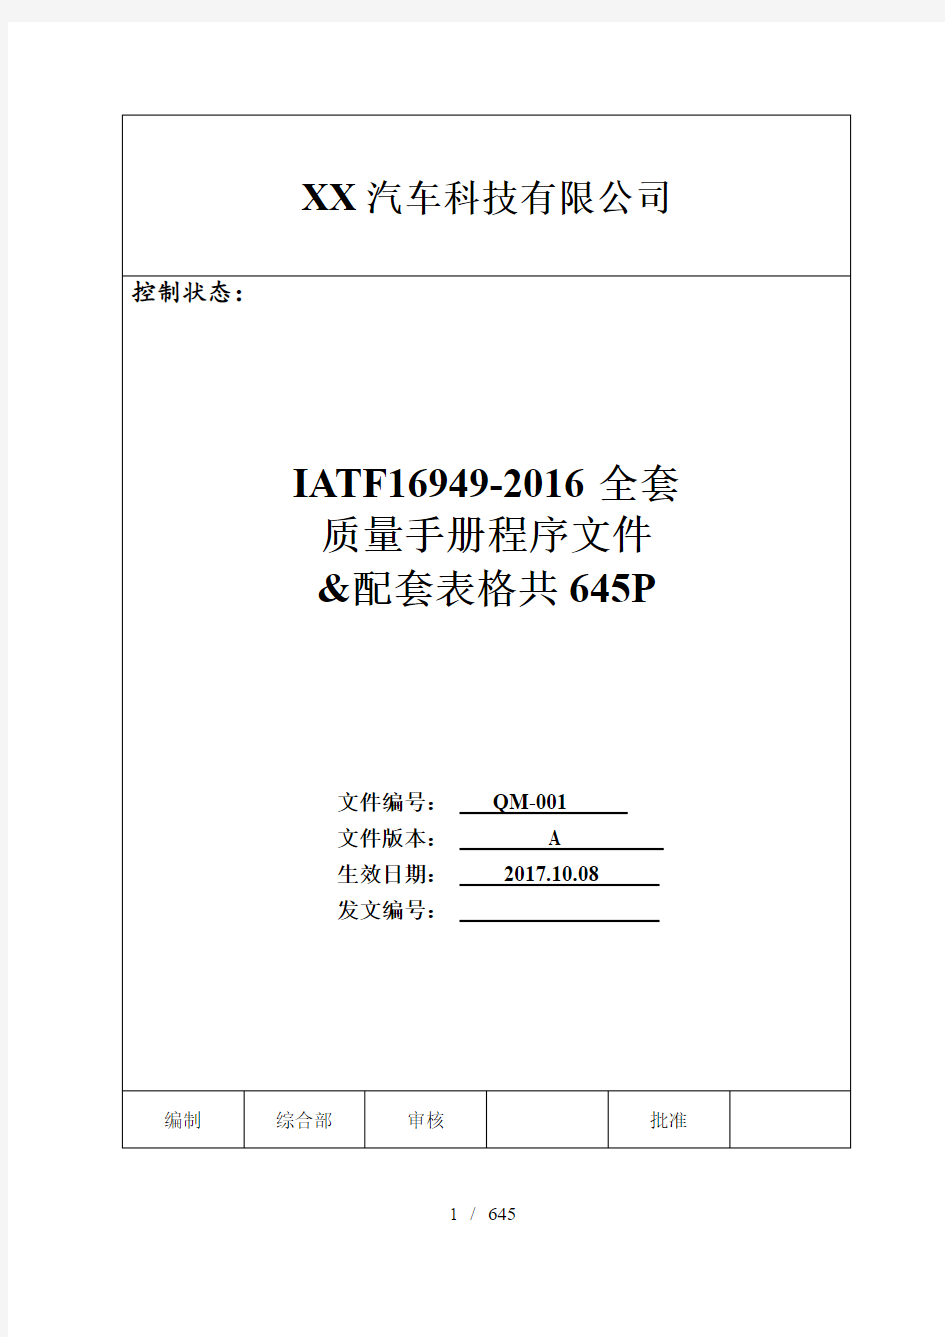 IATF16949-2016版全套质量手册程序文件及表格共635P